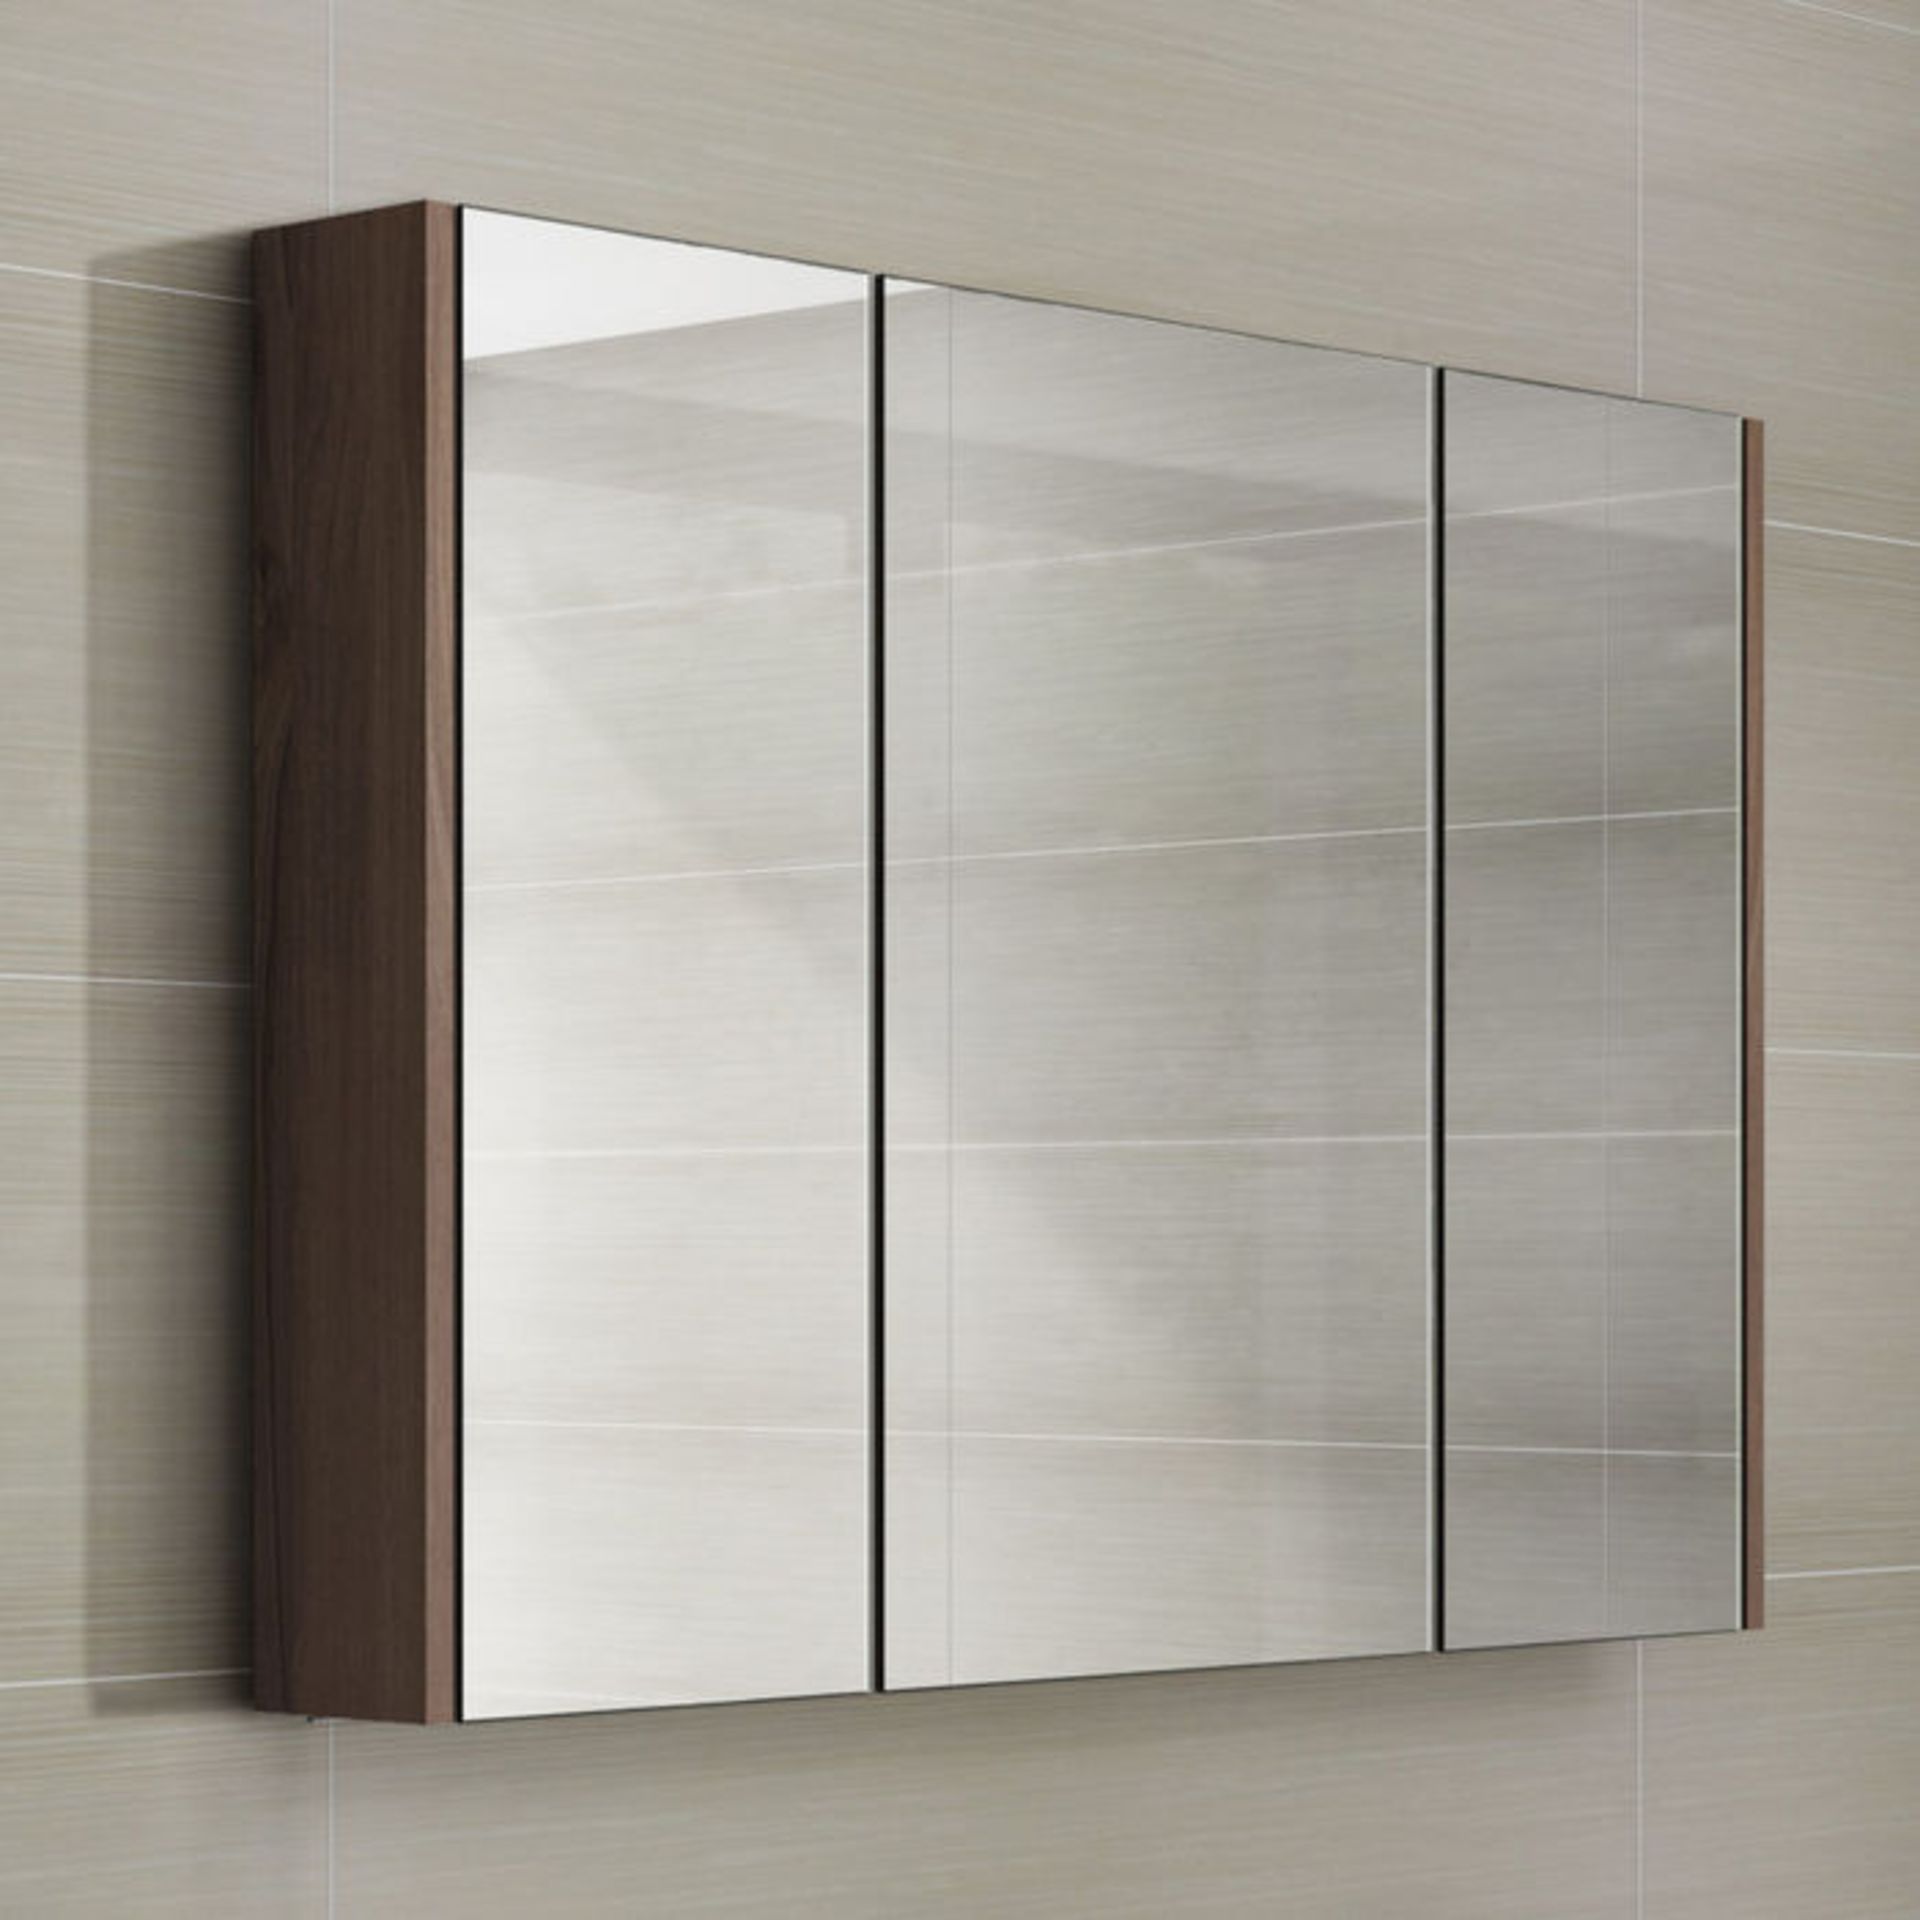 (AL170) 900mm Walnut Effect Triple Door Mirror Cabinet. RRP £229.99.Sleek contemporary design Triple